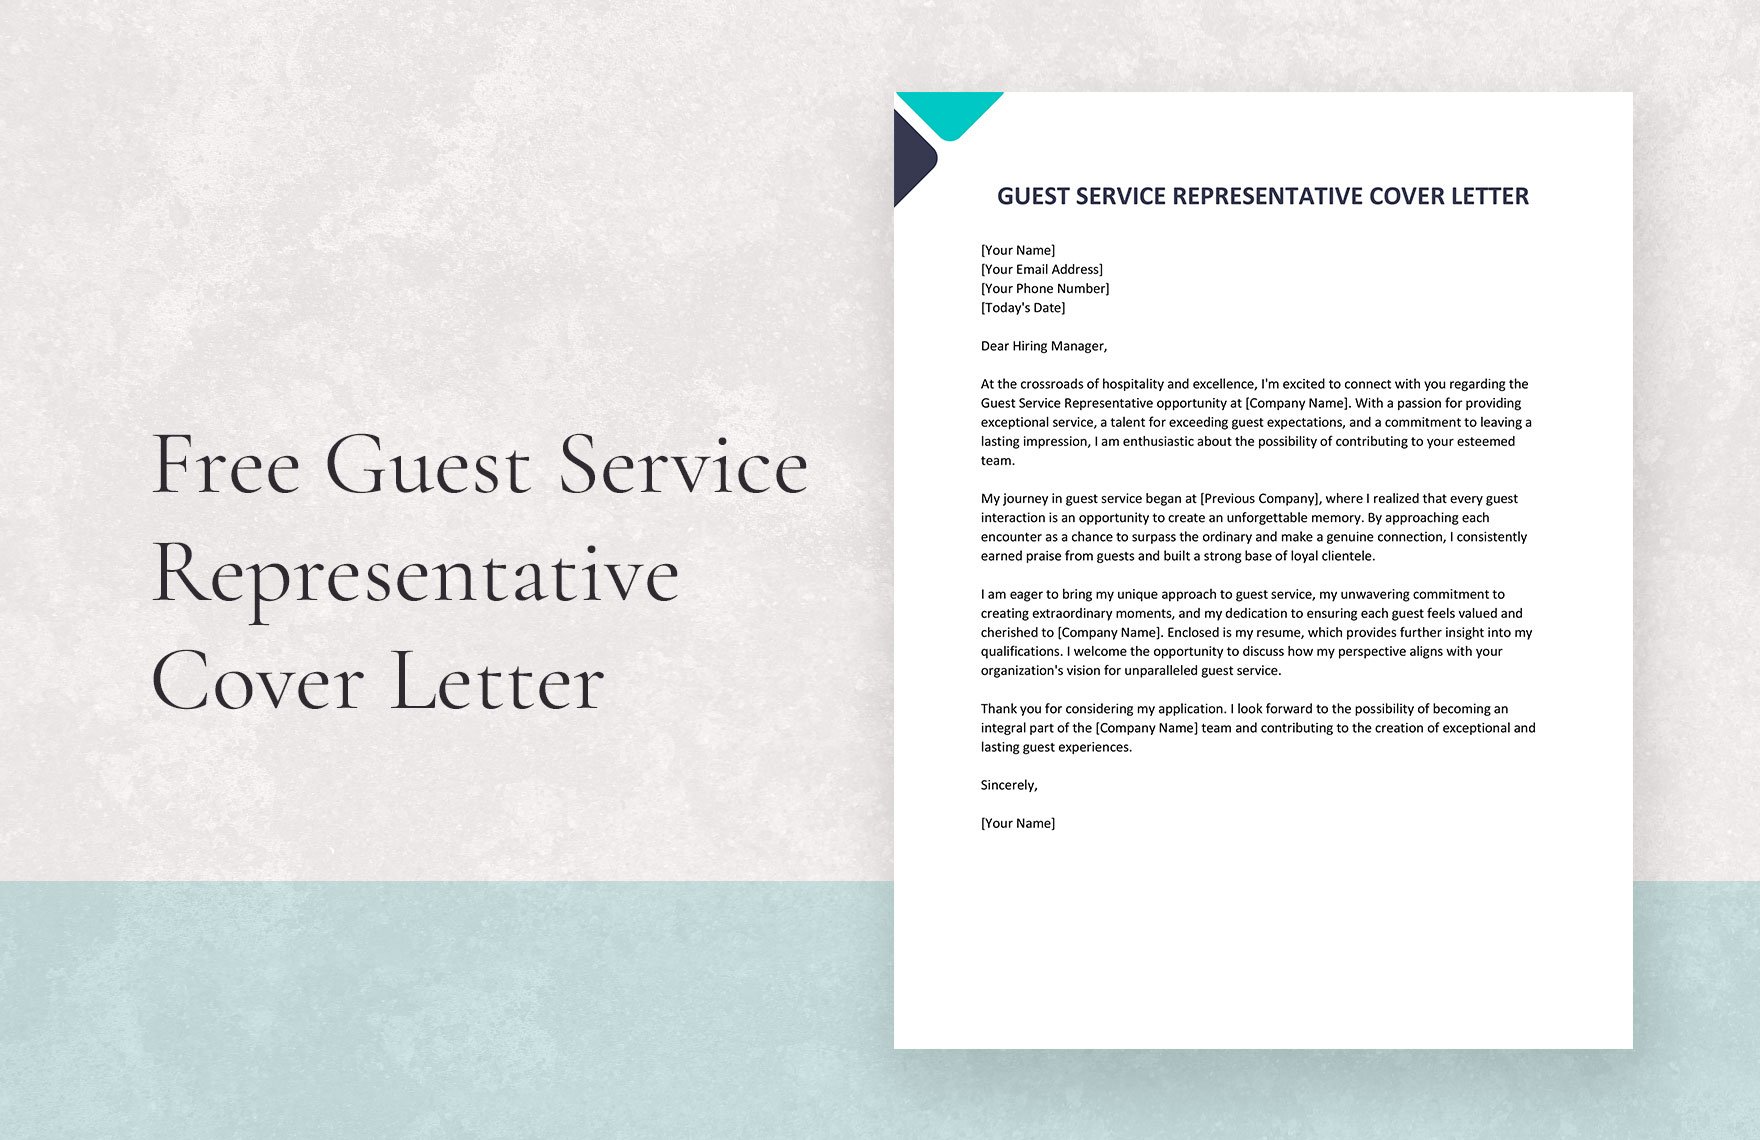 Guest Service Representative Cover Letter